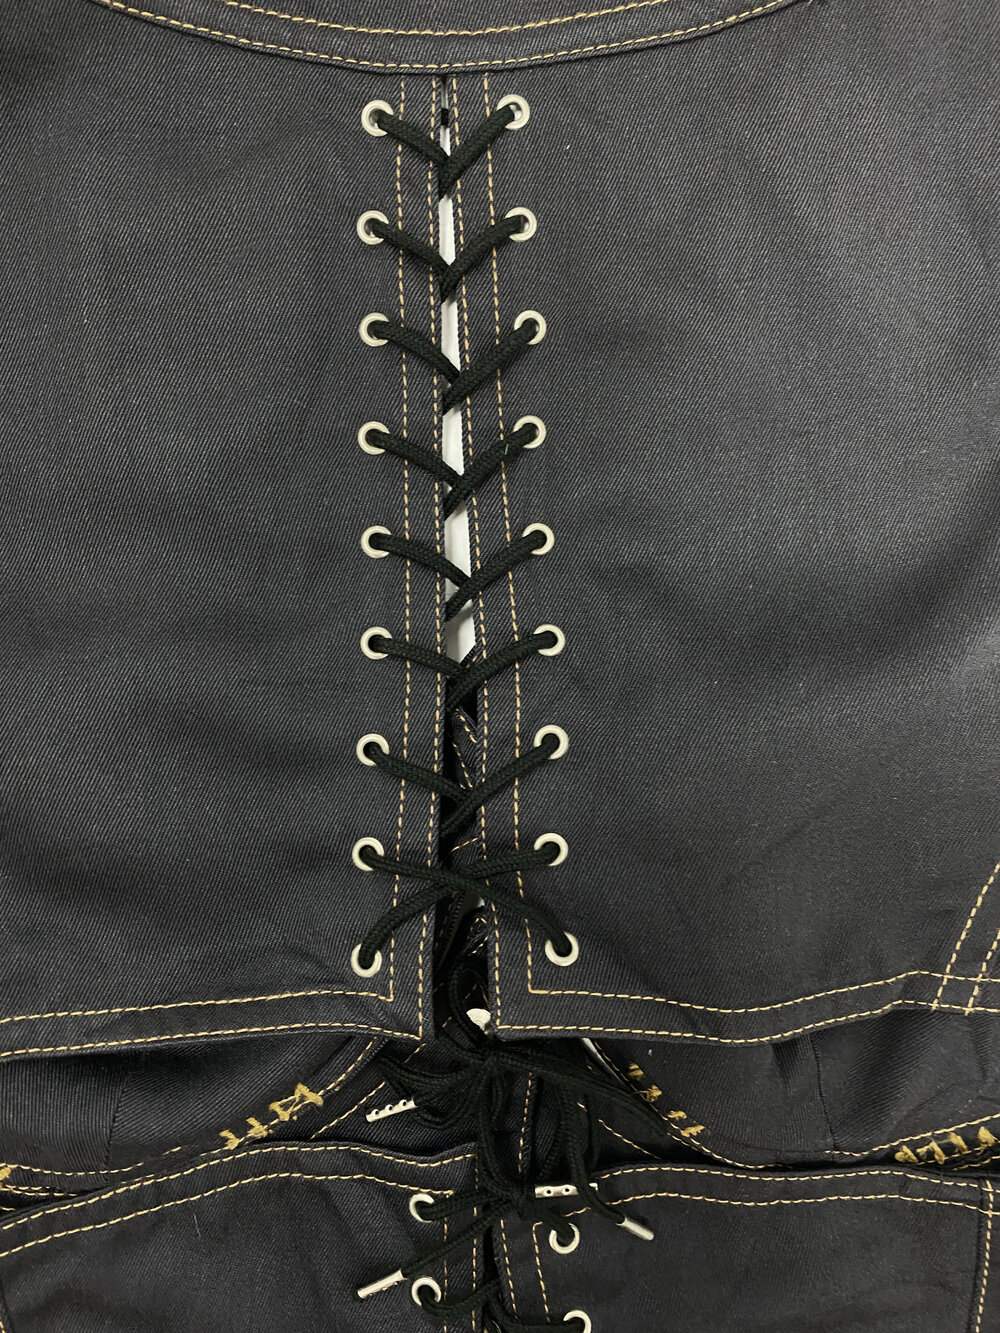 Jean Paul Gaultier cutout corset top — JAMES VELORIA